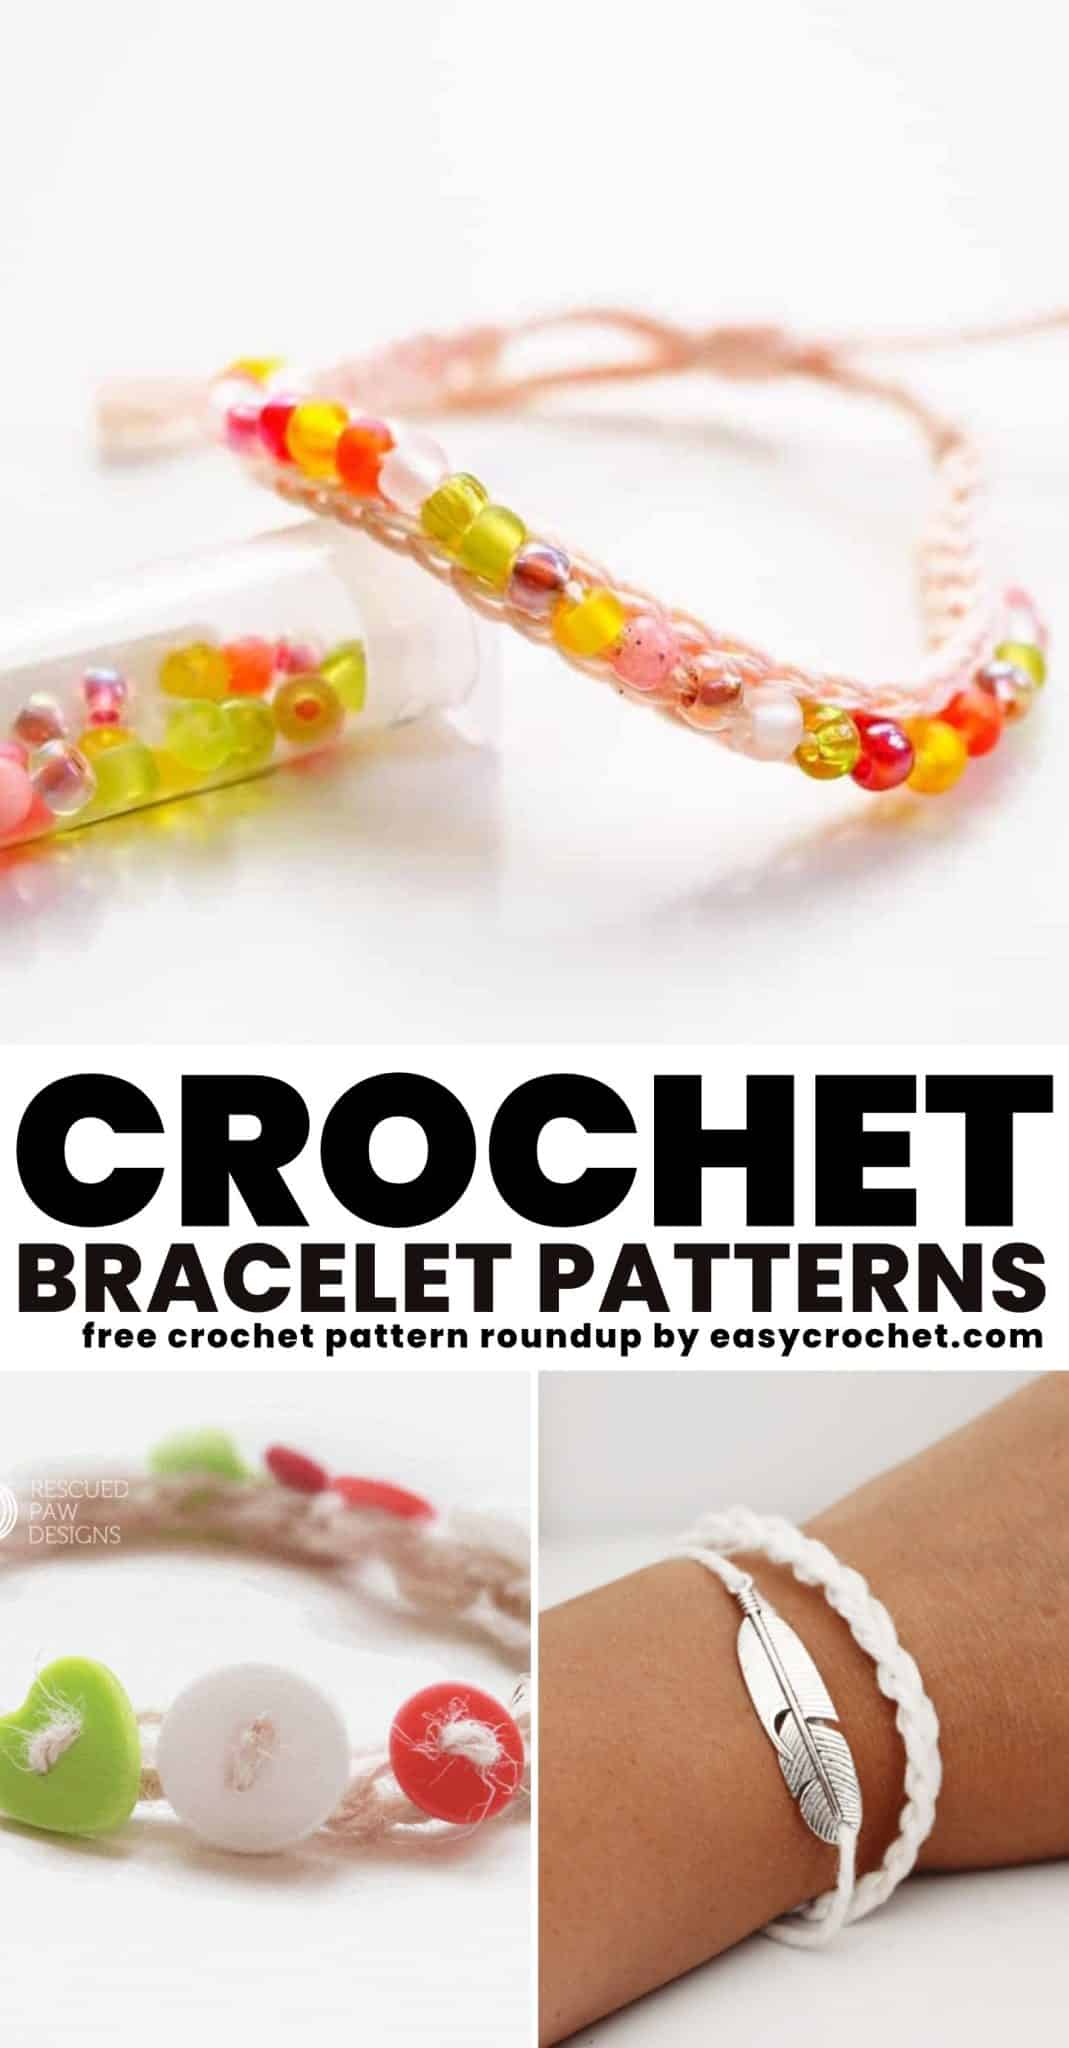 Crochet Bracelet Free Pattern - Easy Crochet Patterns